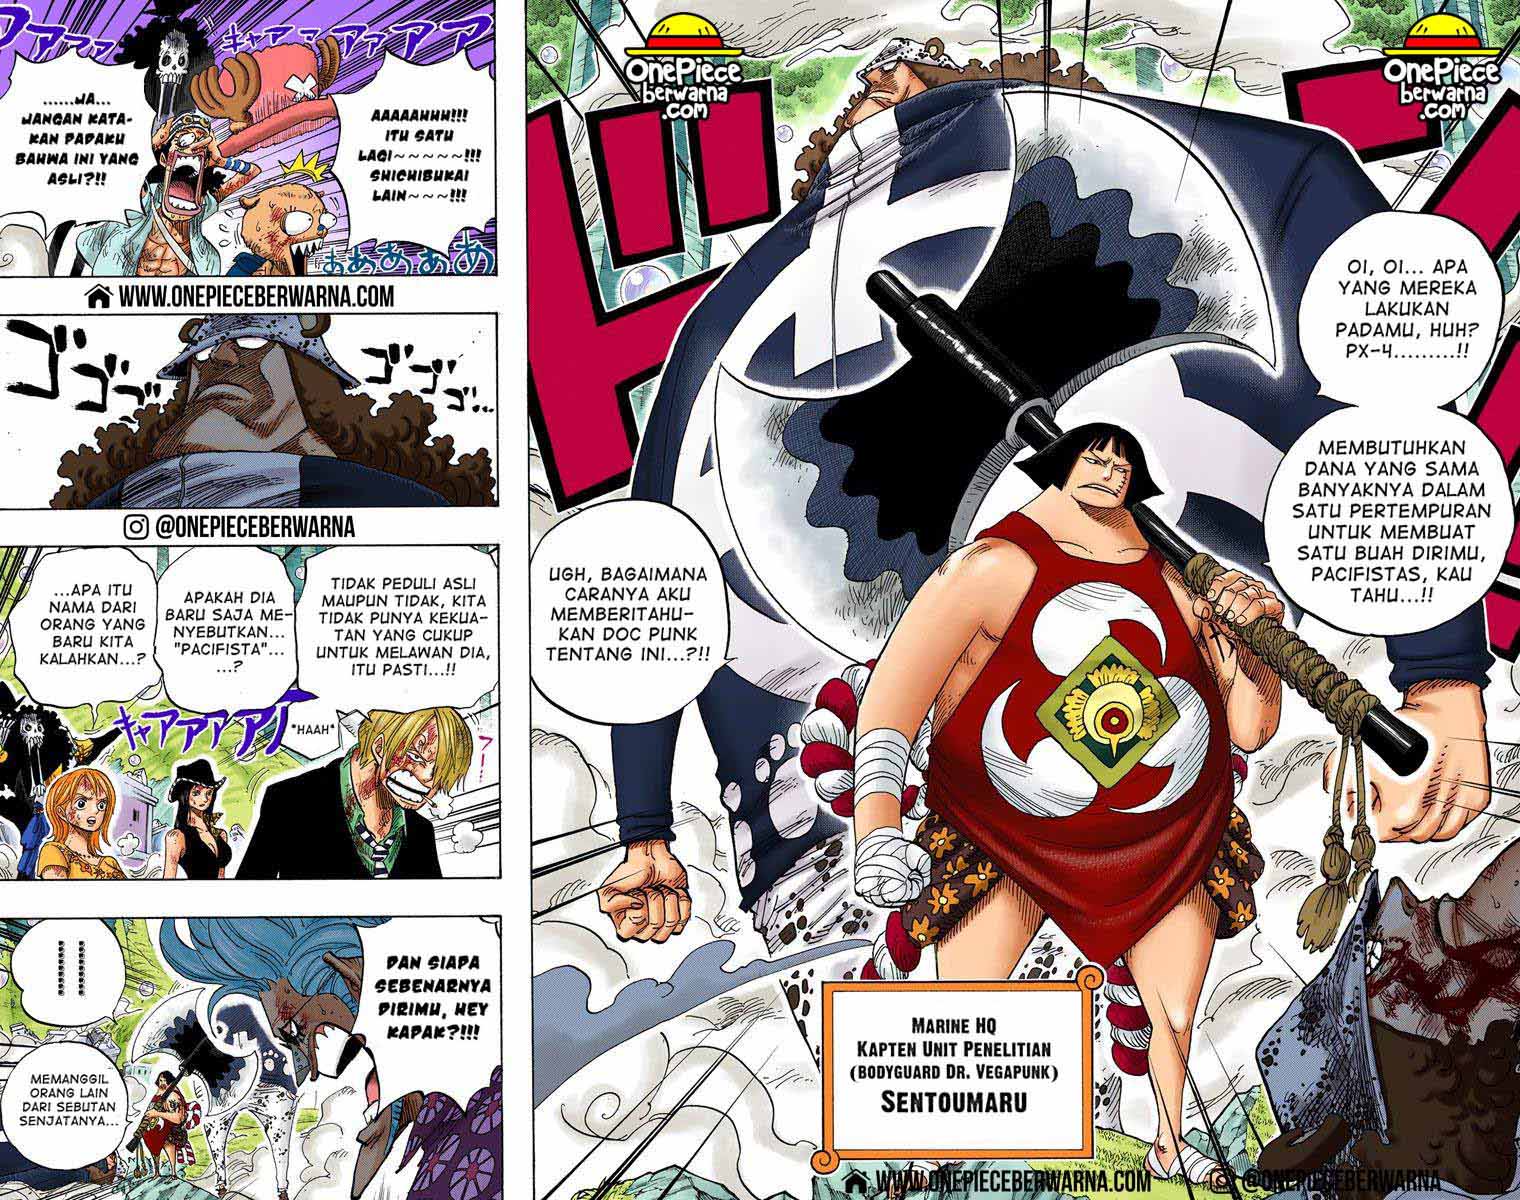 One Piece Berwarna Chapter 511